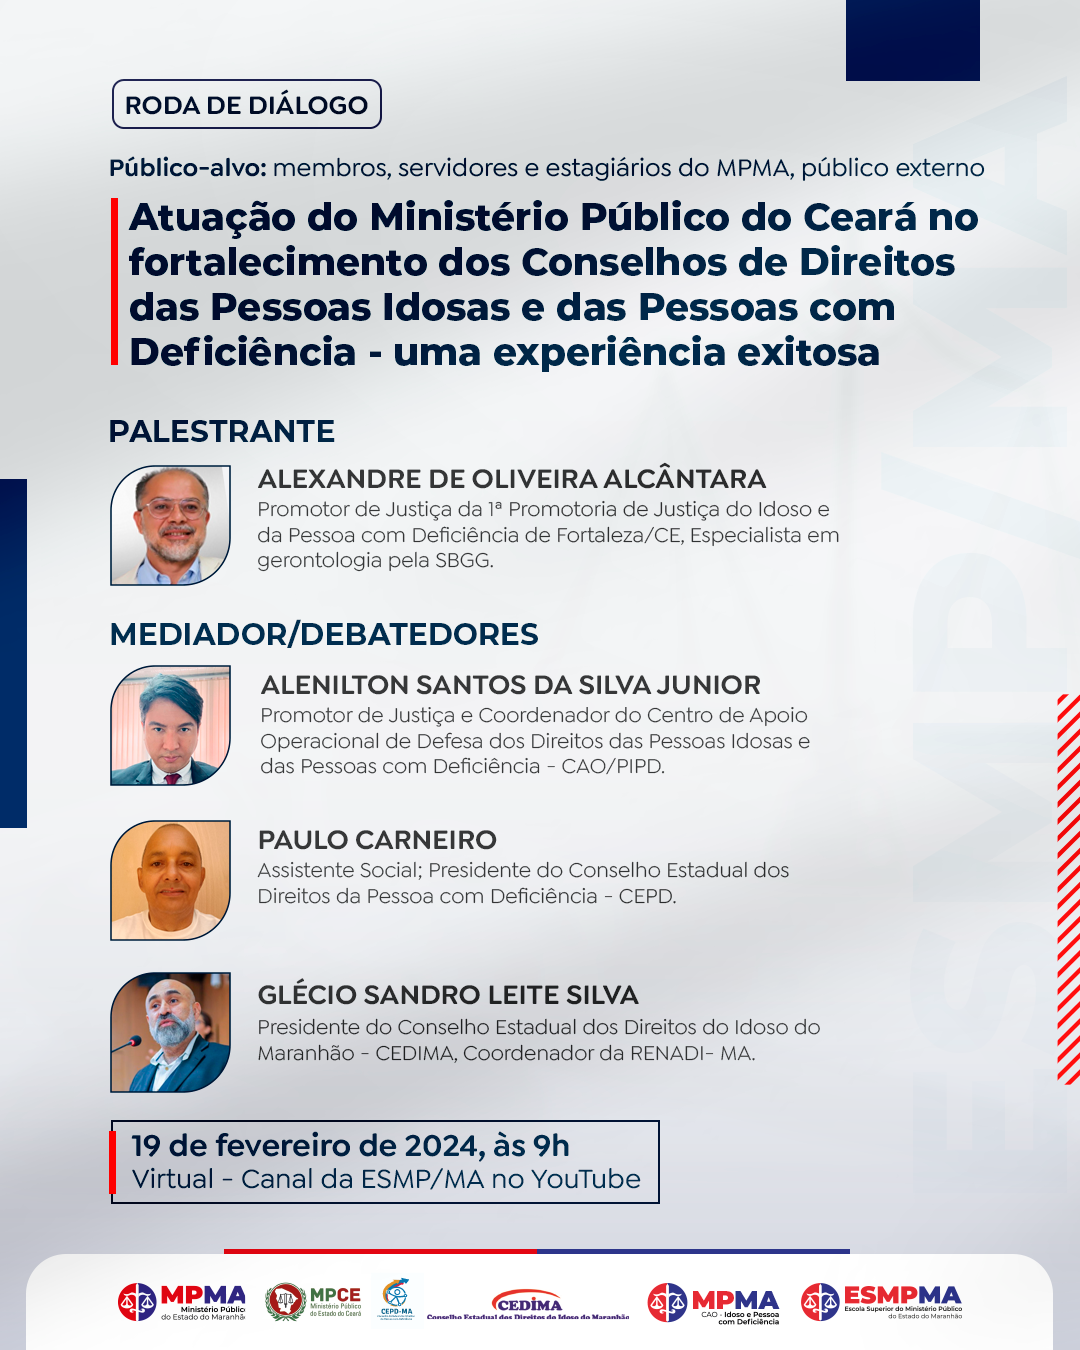 Roda de Diálogo "Atuação do Ministério Público do Ceará no fortalecimento dos Conselhos de Direitos das Pessoas Idosas e das Pessoas com Deficiência - uma experiência exitosa"